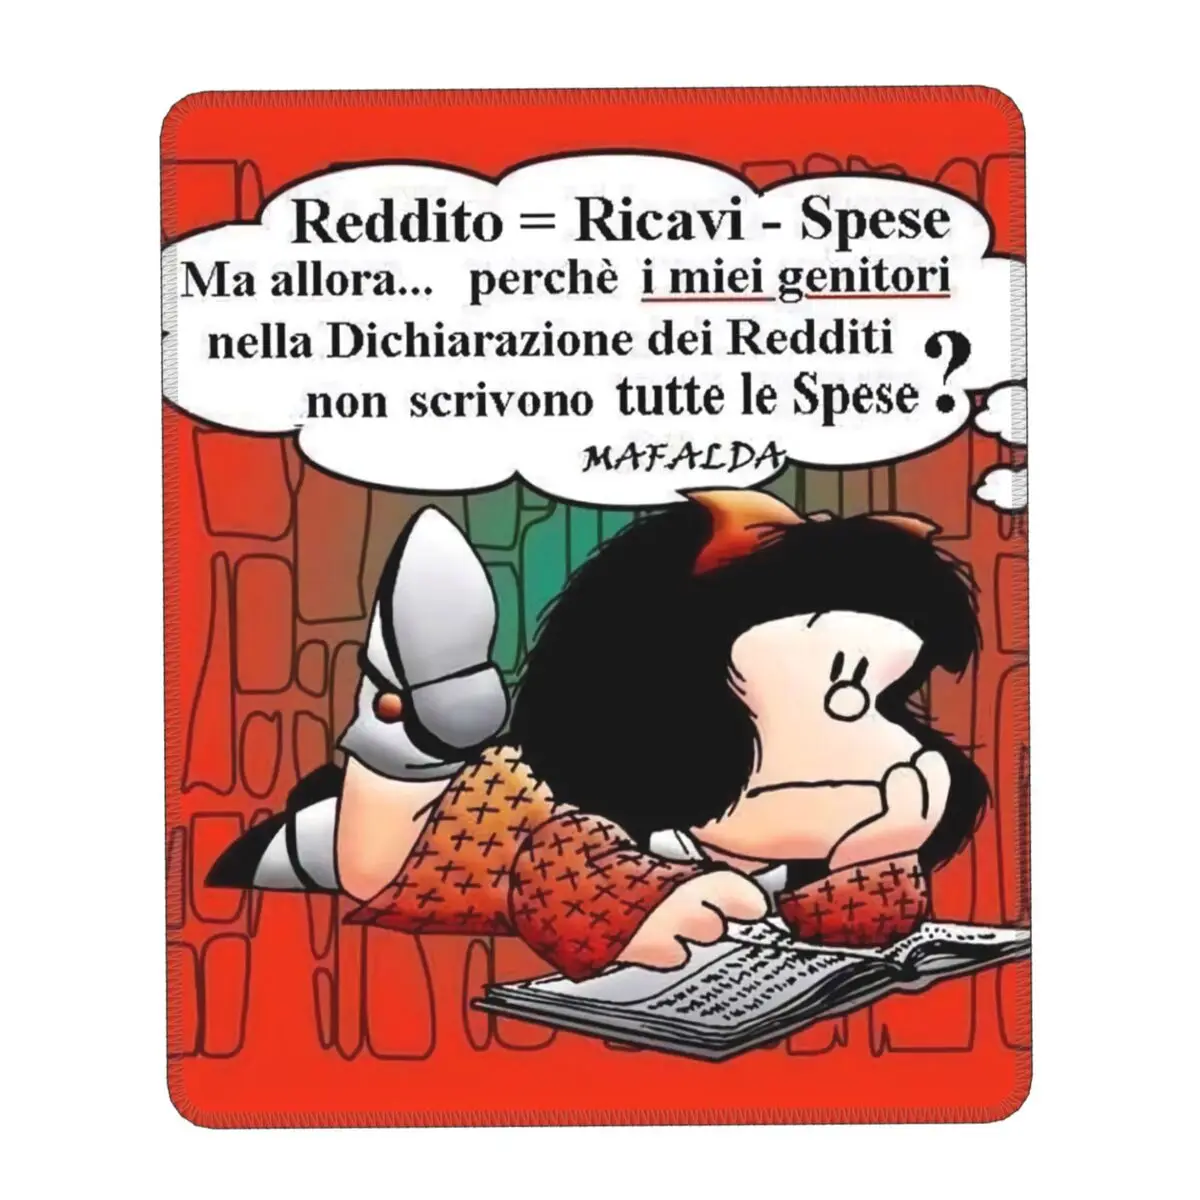 Фото Коврик для мыши Quino Comic Cartoon Mafalda с нескользящим резиновым основанием, персонализированный игровой коврик для мыши, аксессуары для офисного ПК-стола.